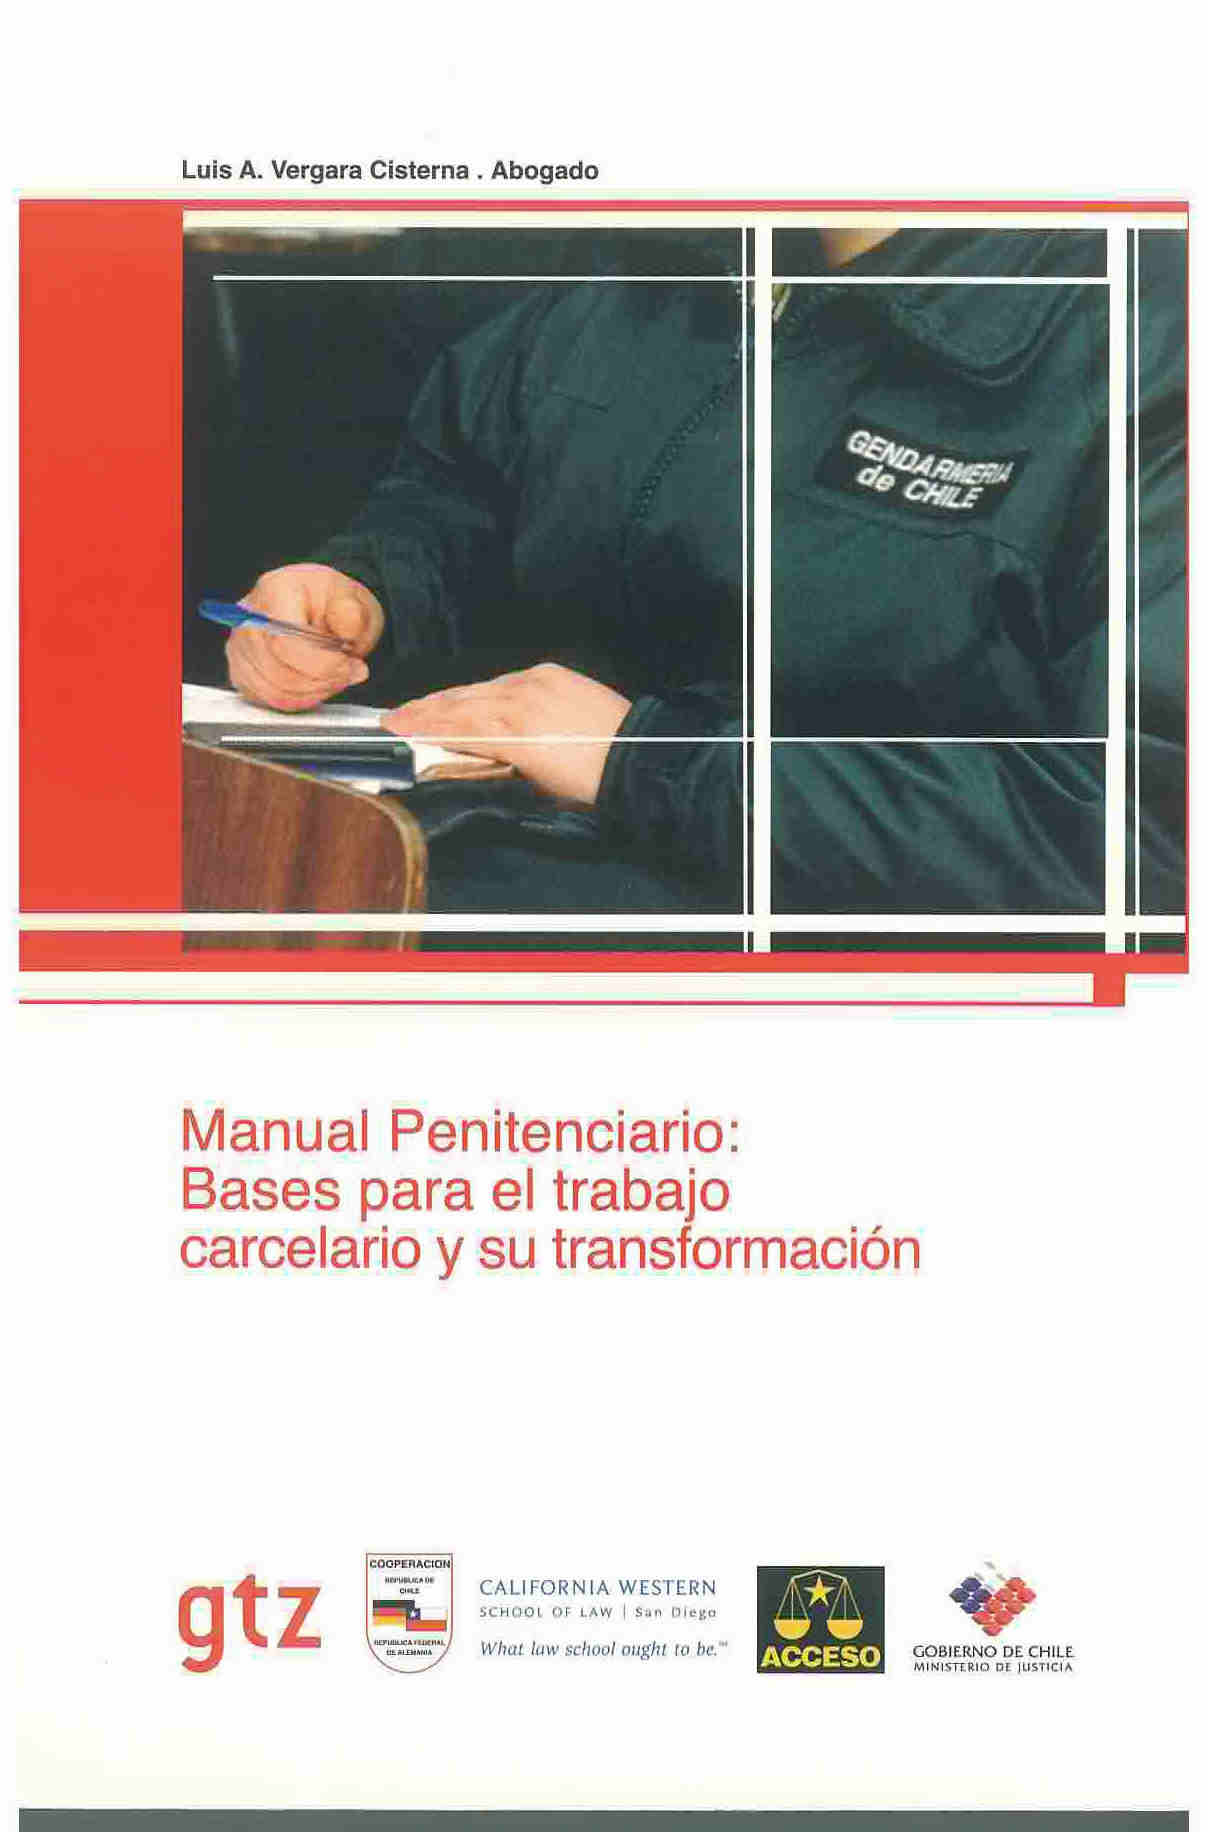 Manual penitenciario: Bases para el trabajo carcelario y su transformación